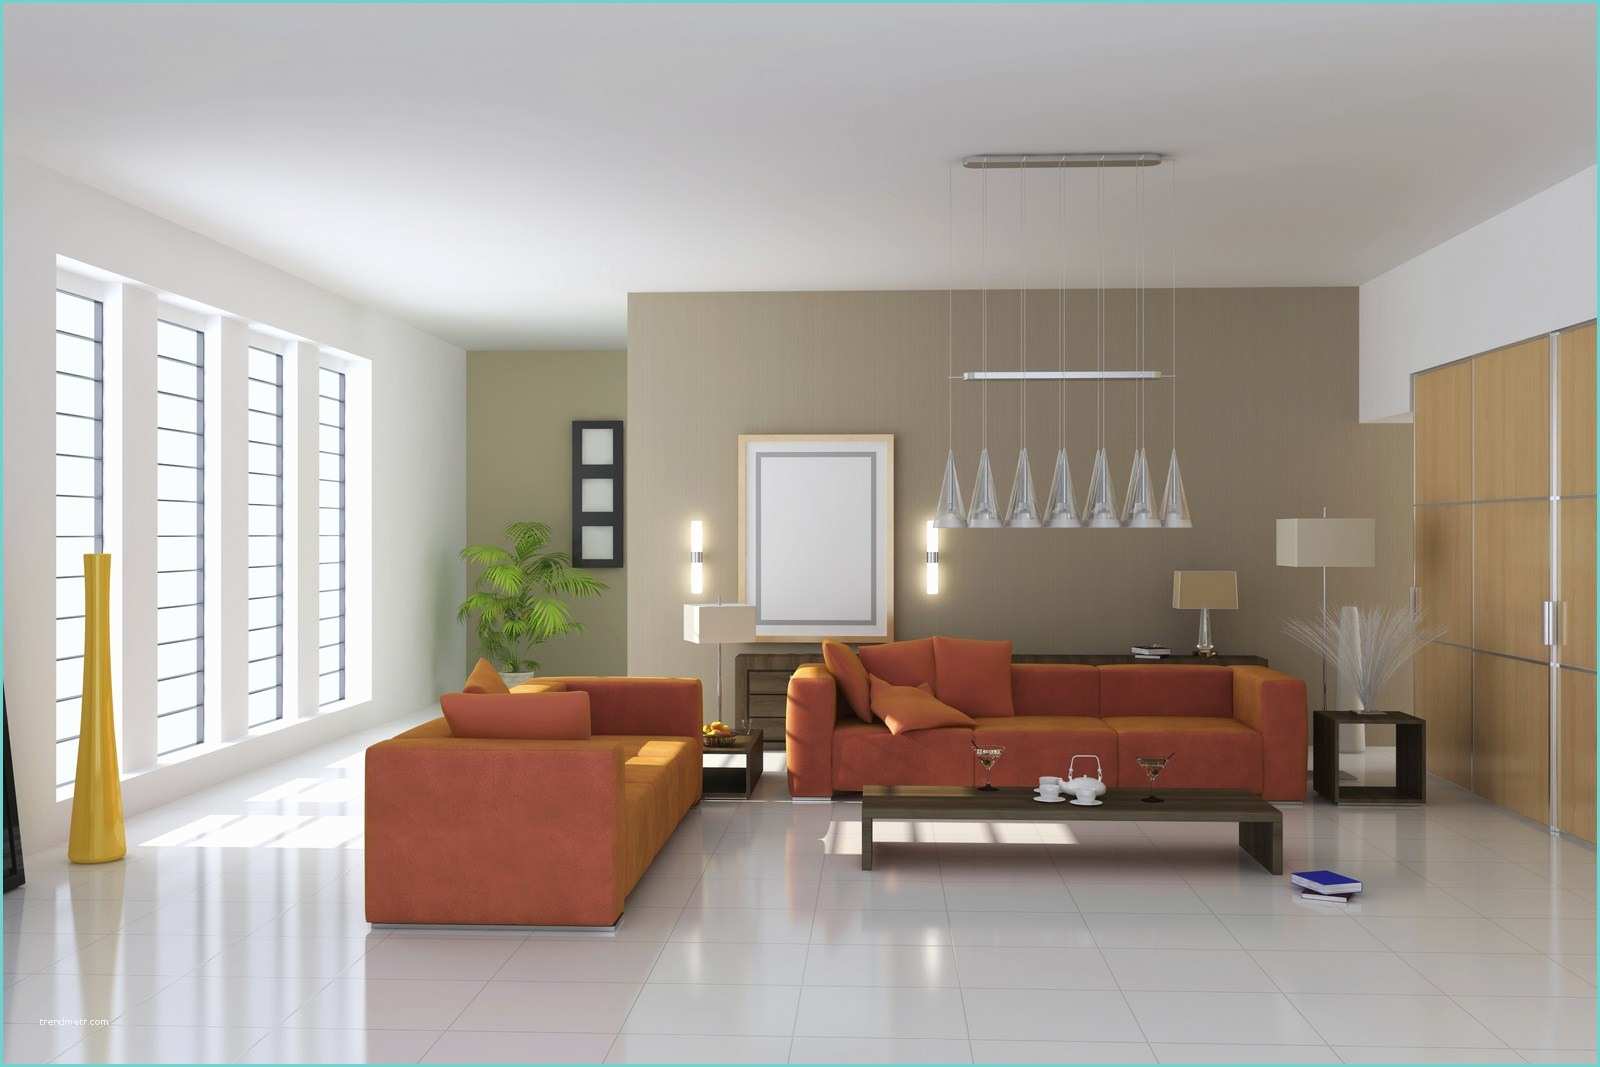 Simulation D Amenagement Interieur Decoration Interieur Couleur Idee Interieur De Maison